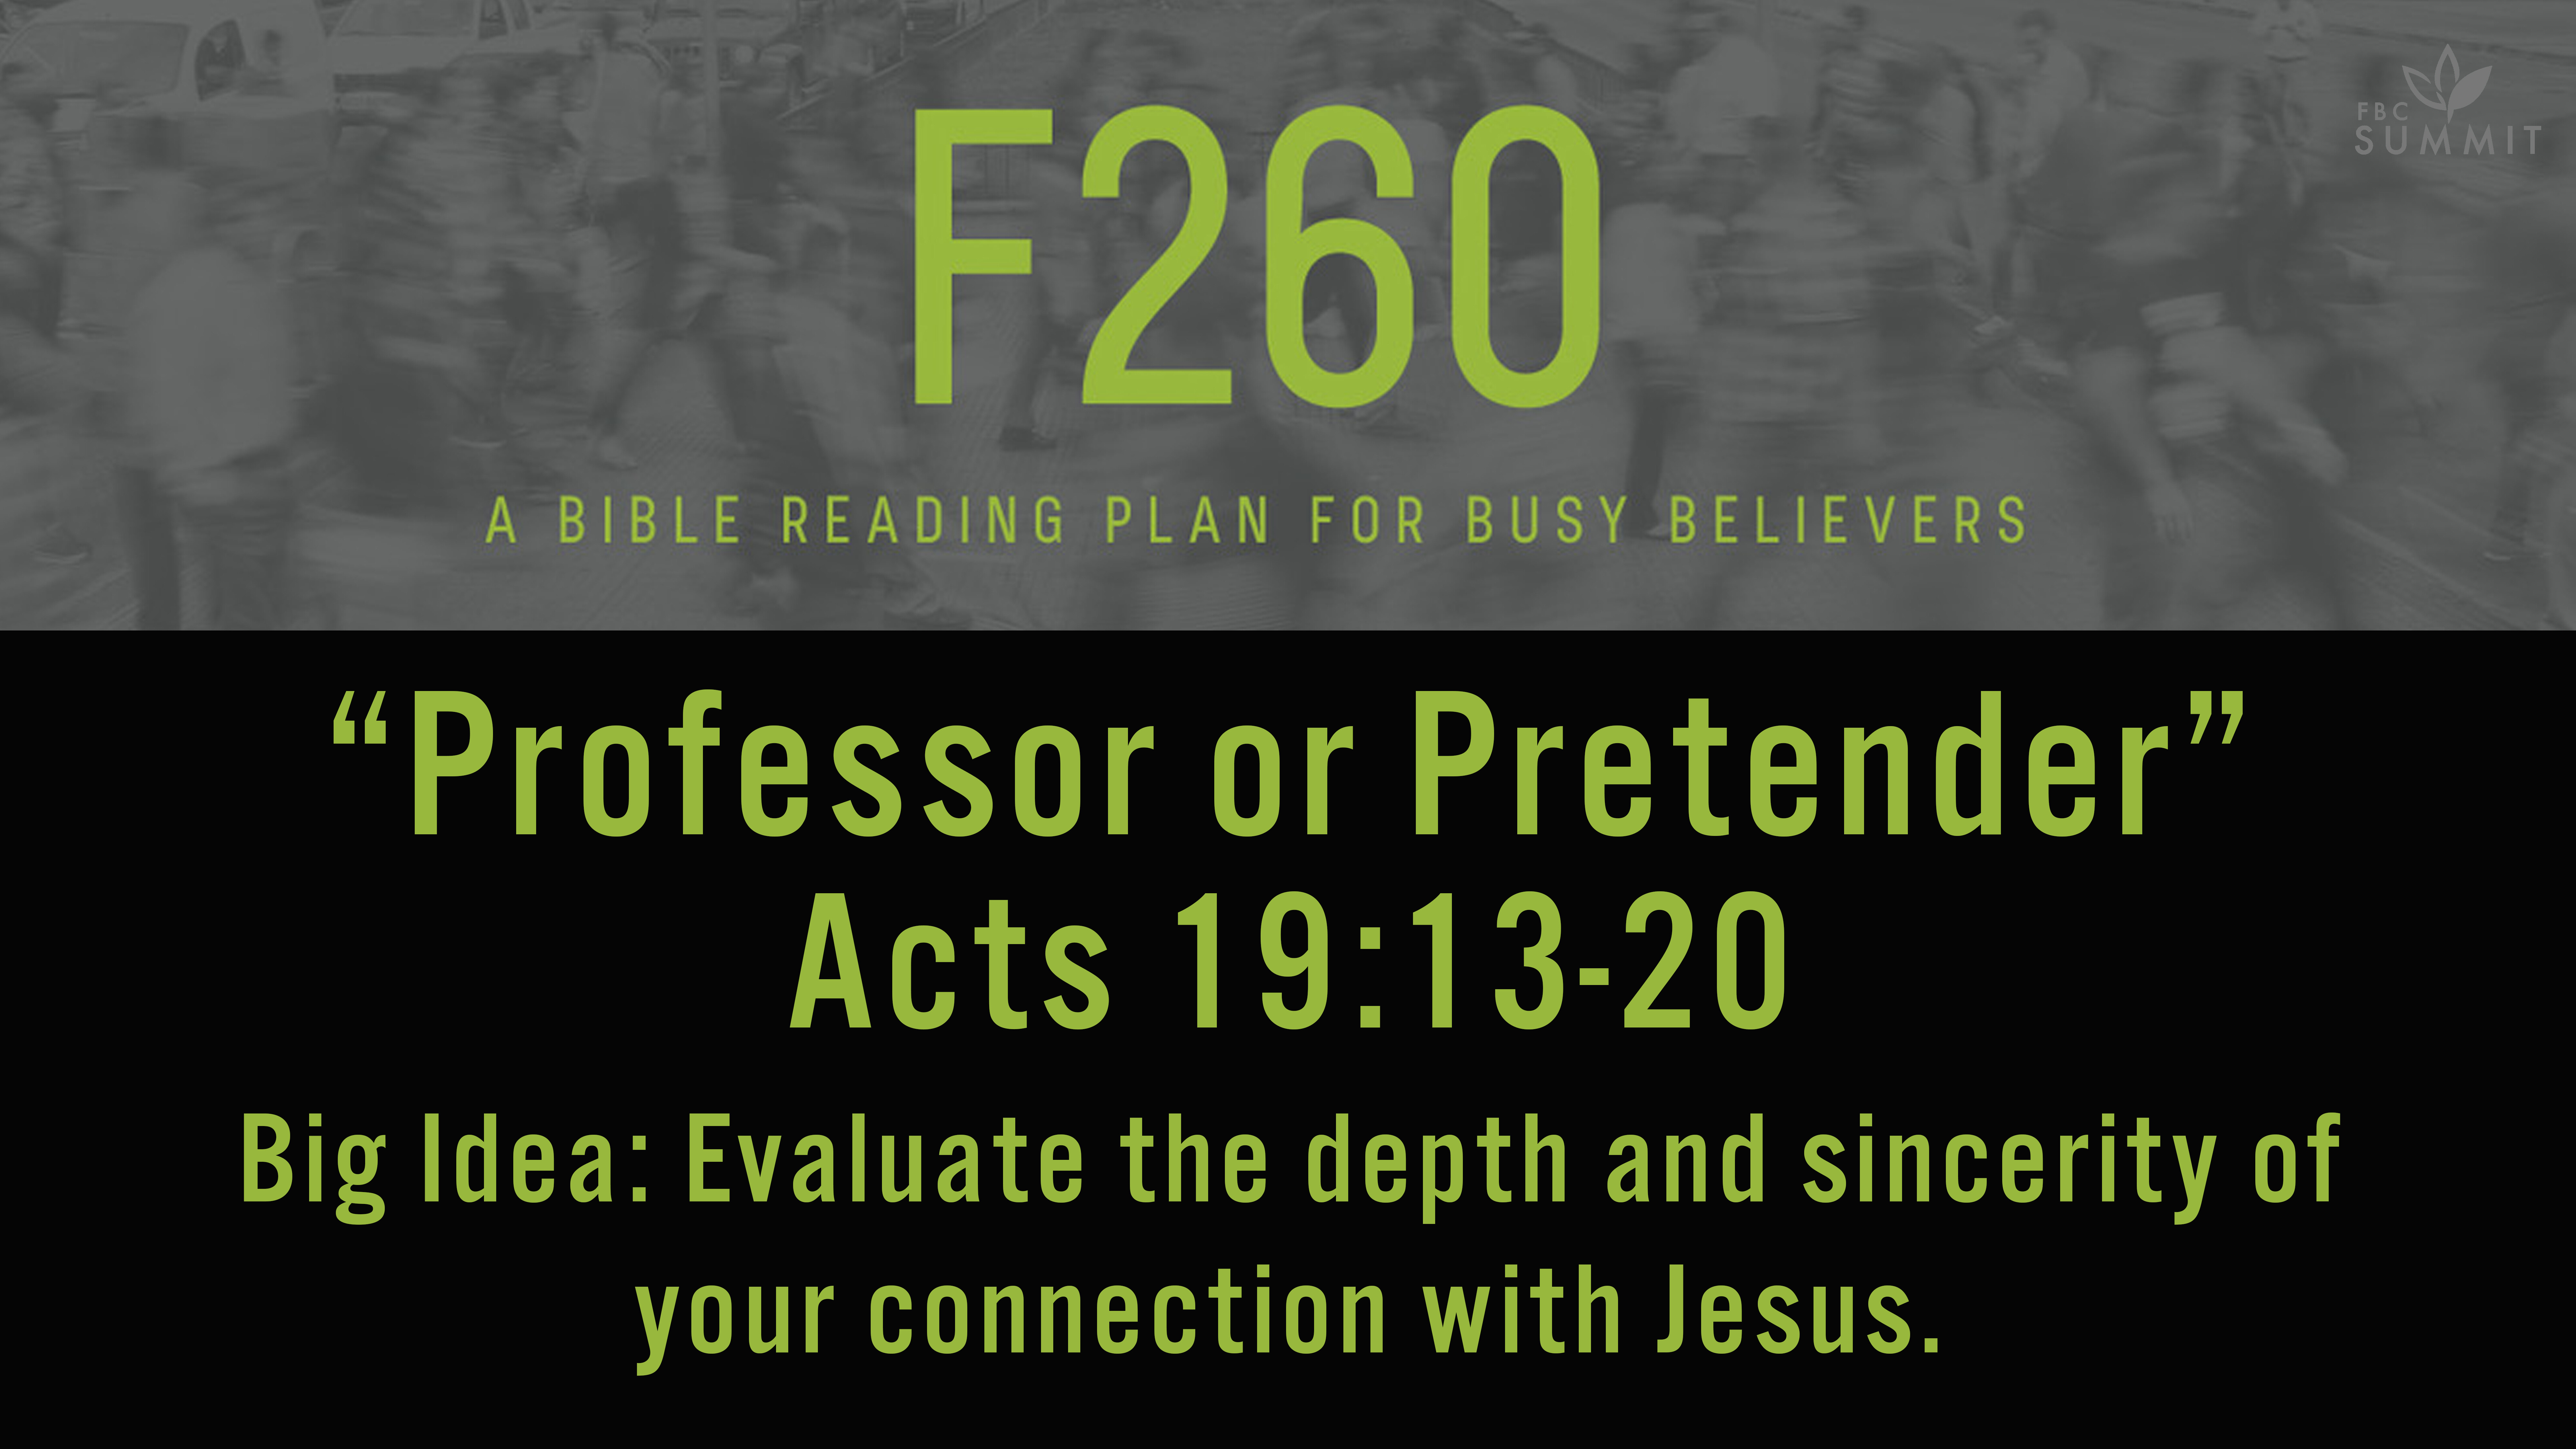 F260: "Professor or Pretender" Acts 19:13-20